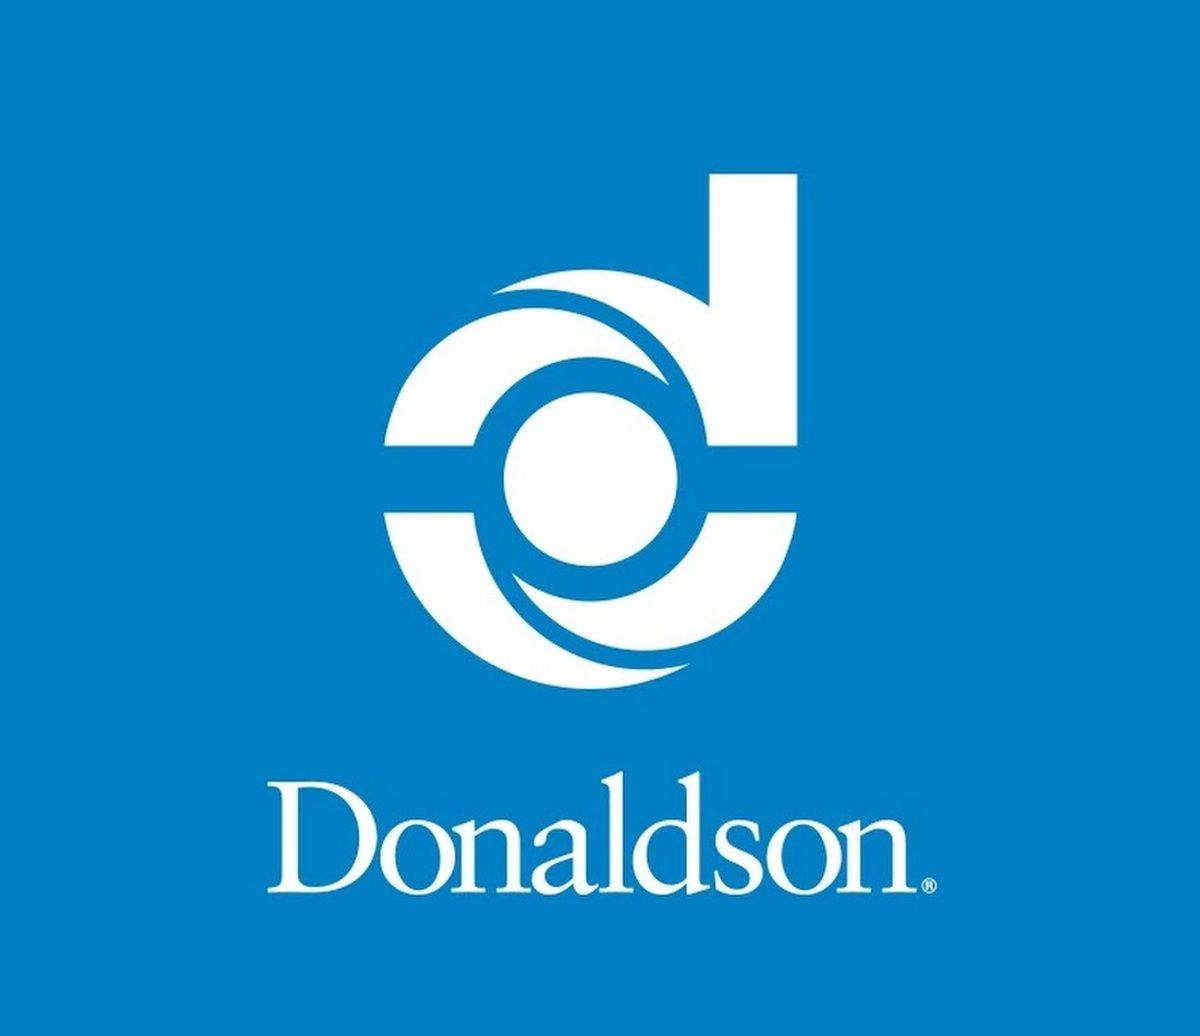 Donaldson's Logo - Donaldson Company details job cut plans | News | WSAU